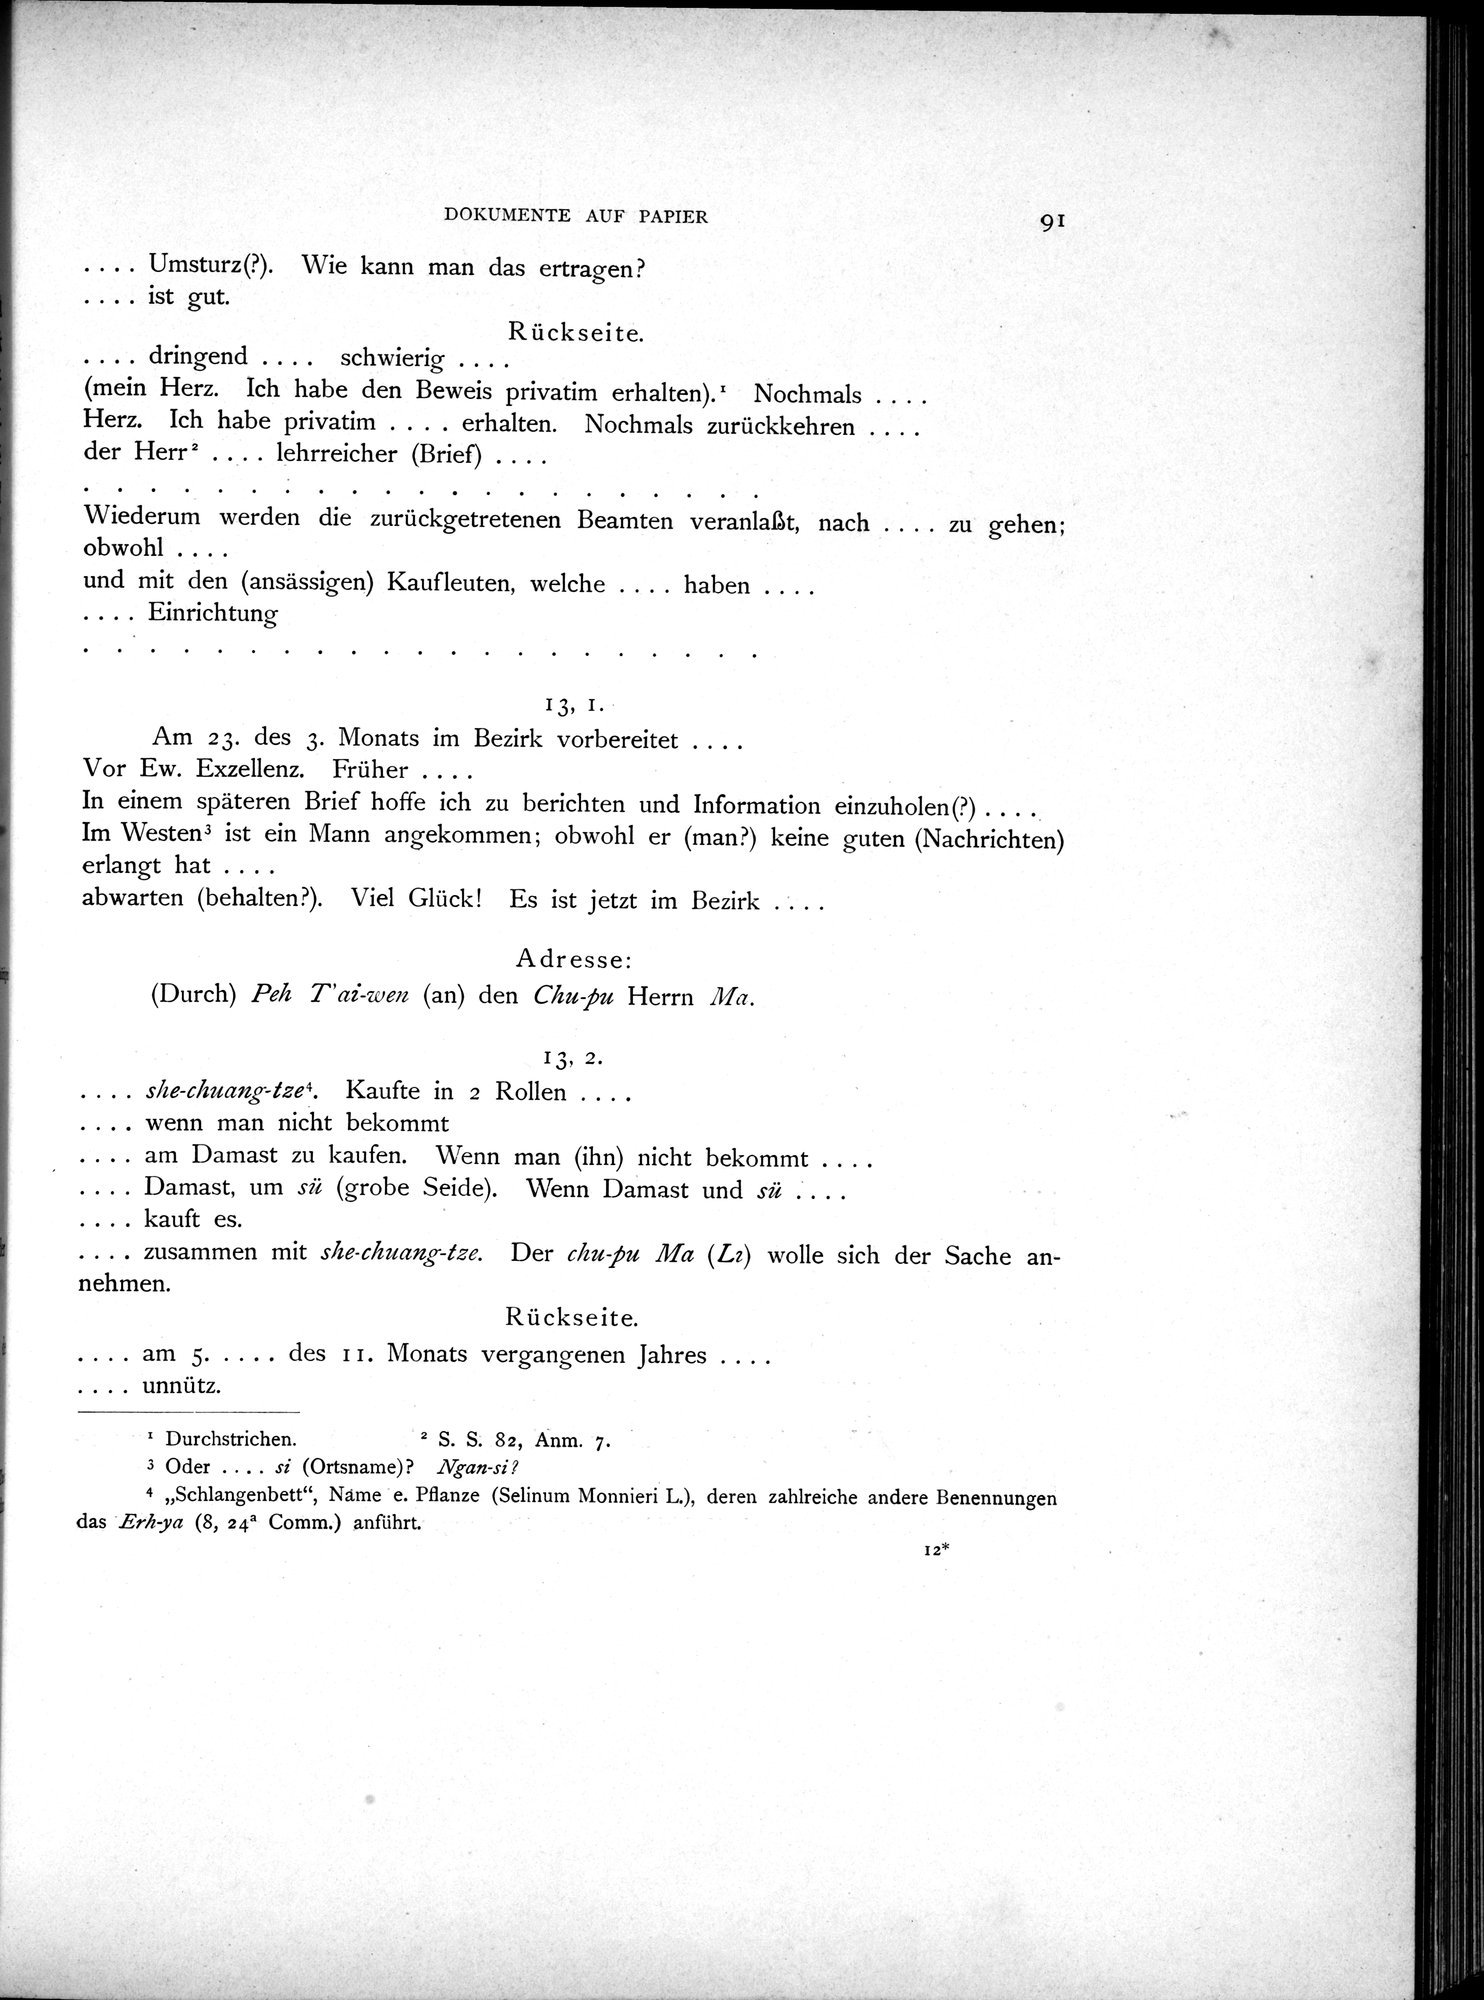 Die Chinesischen Handschriften- und sonstigen Kleinfunde Sven Hedins in Lou-lan : vol.1 / Page 115 (Grayscale High Resolution Image)